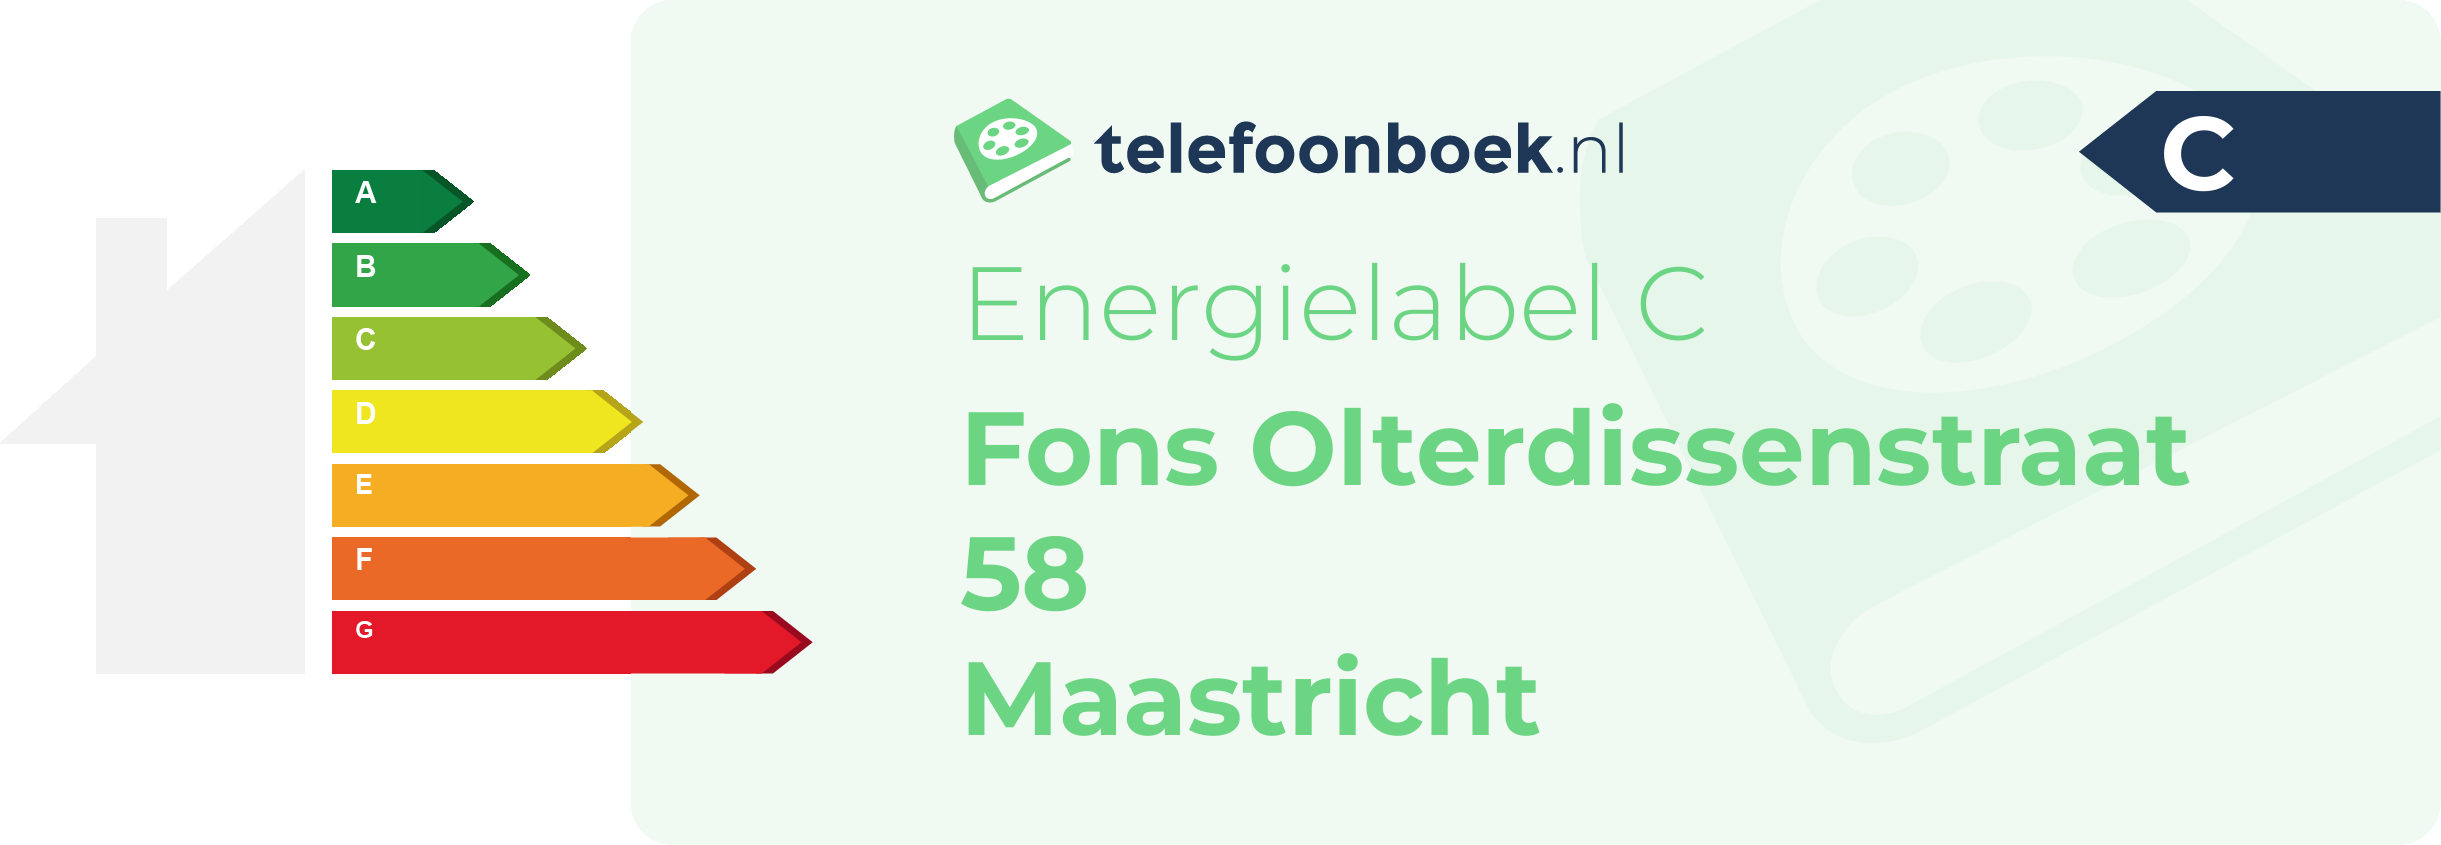 Energielabel Fons Olterdissenstraat 58 Maastricht